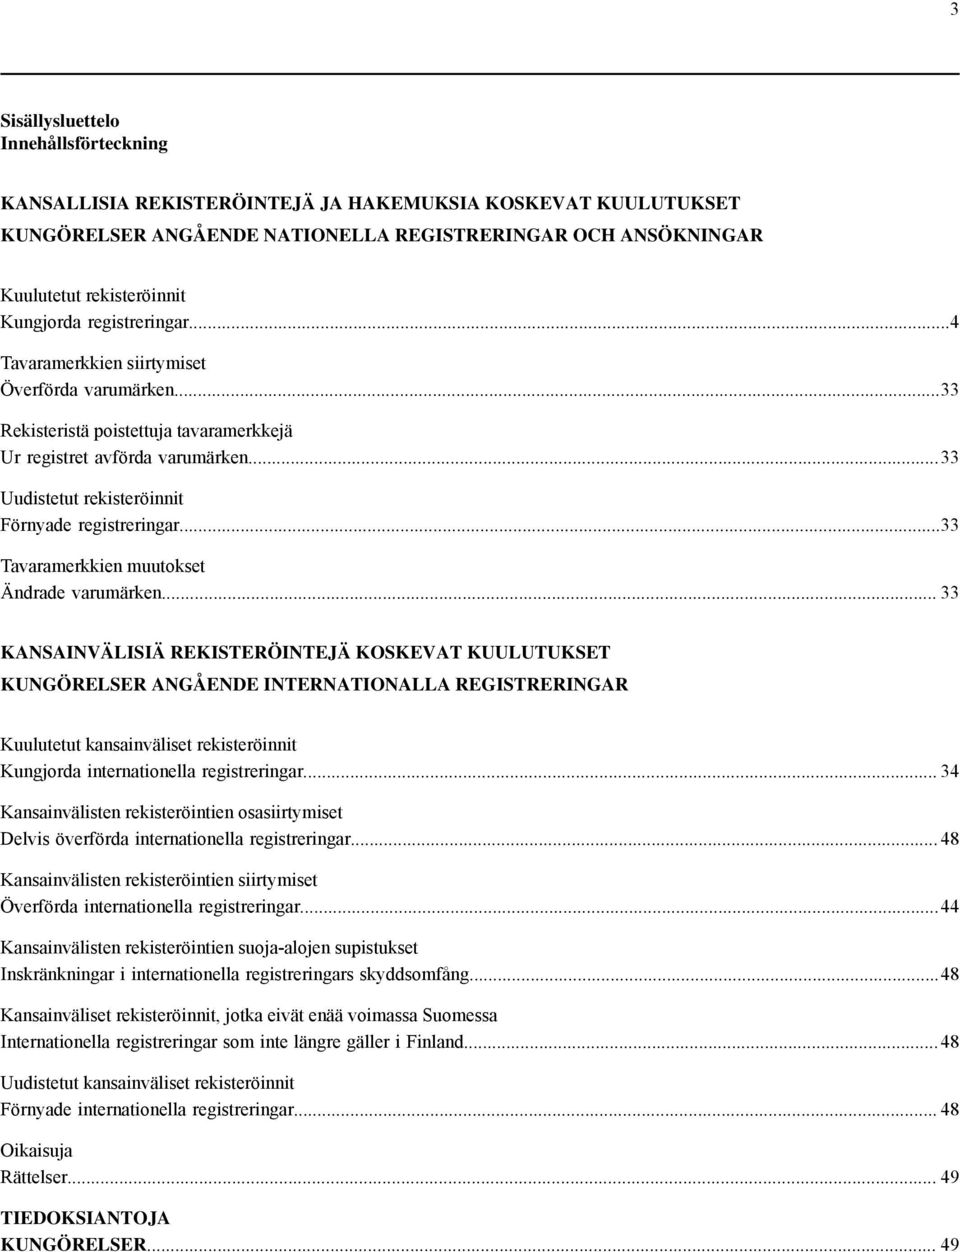 .. 33 Uudistetut rekisteröinnit Förnyade registreringar...33 Tavaramerkkien muutokset Ändrade varumärken.